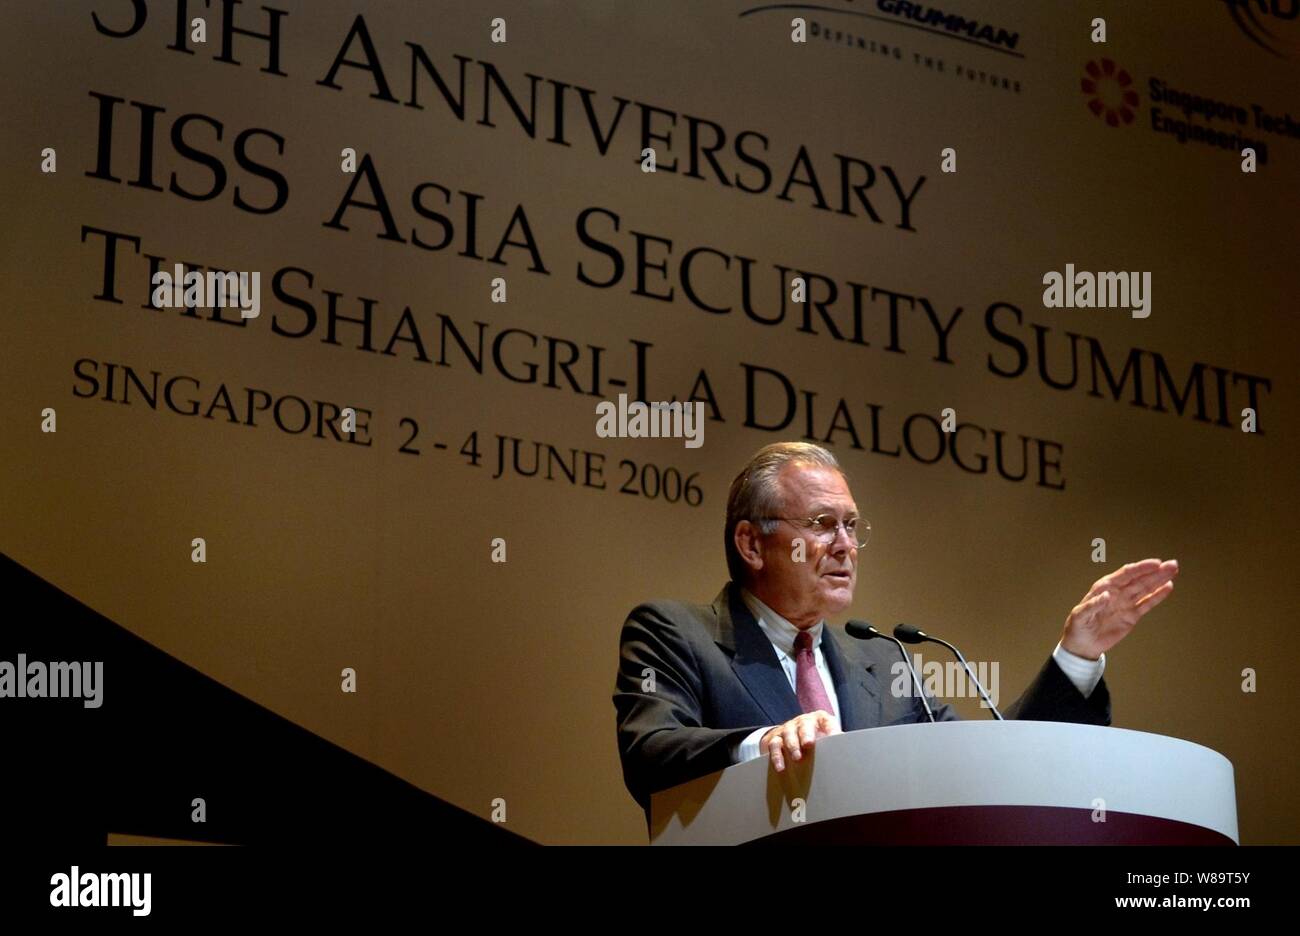 Verteidigungsminister Donald H. Rumsfeld Adressen das Publikum an der fünften jährlichen Internationalen Institut für Strategische Studien in Asien Sicherheitskonferenz in Singapur, am 2. Juni 2006. Rumsfeld ist in Singapur mit regionalen Verbündeten zu treffen und die Konferenz, da die Shangri-La Dialog bekannt. Stockfoto